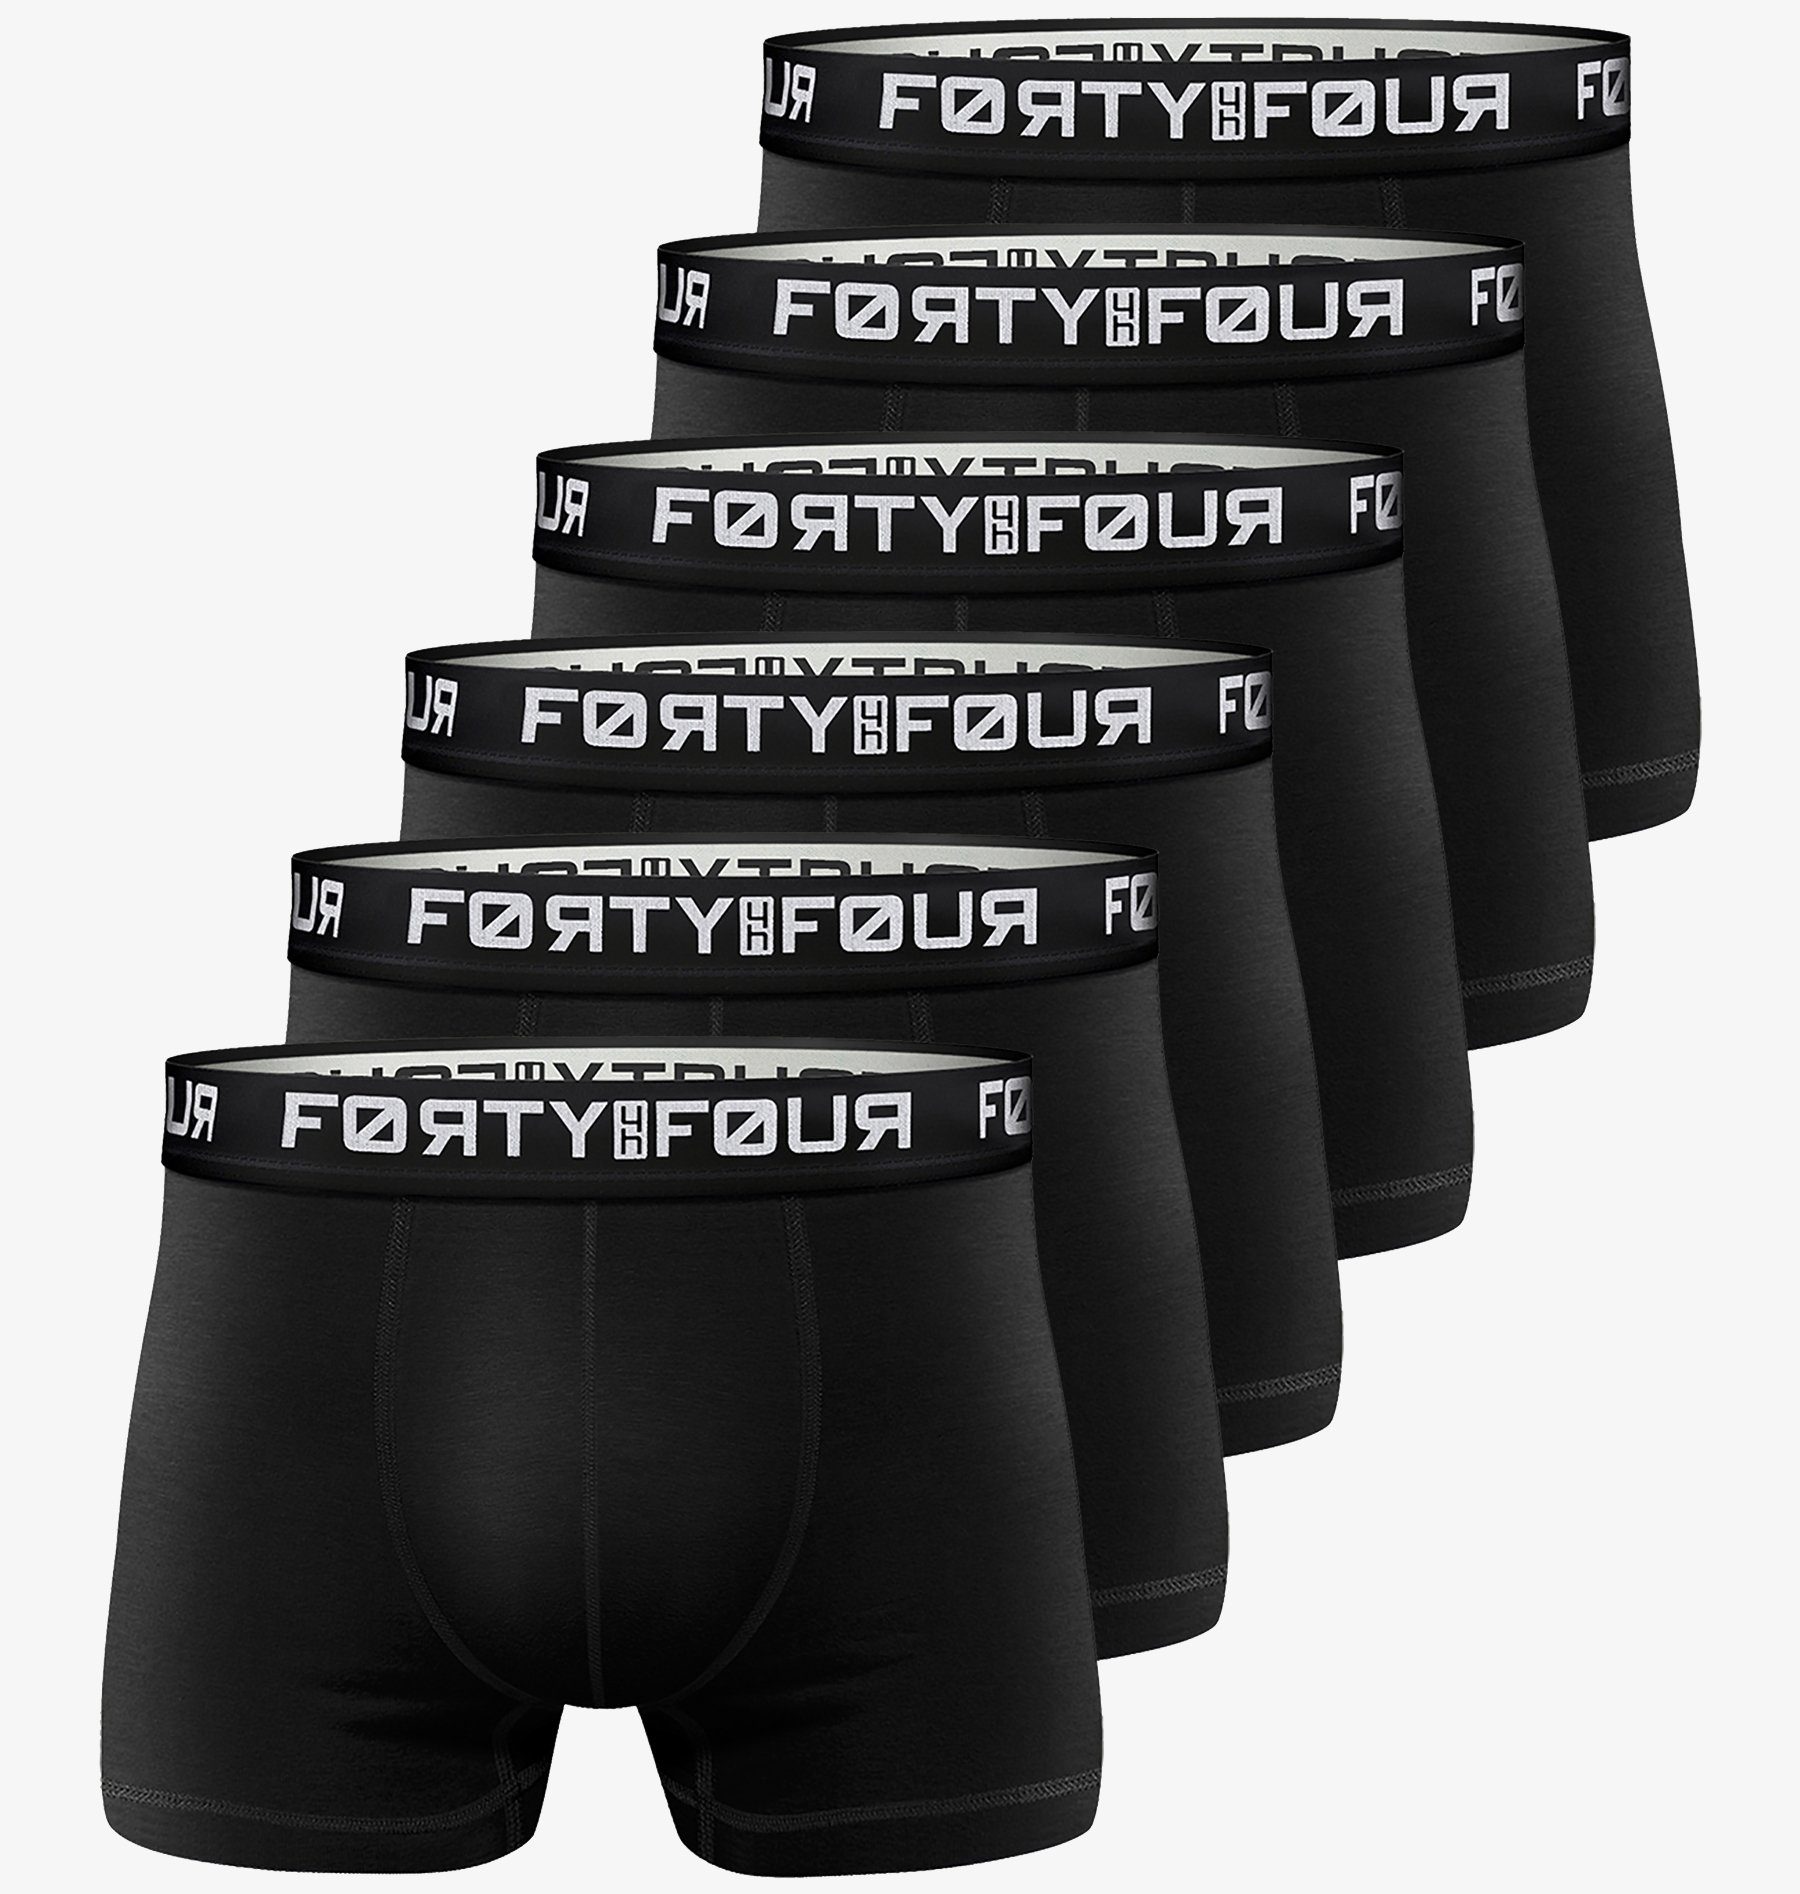 FortyFour Boxershorts Herren Männer Unterhosen Baumwolle Premium Qualität perfekte Passform (Vorteilspack, 6er Pack) S - 7XL 706b-schwarz